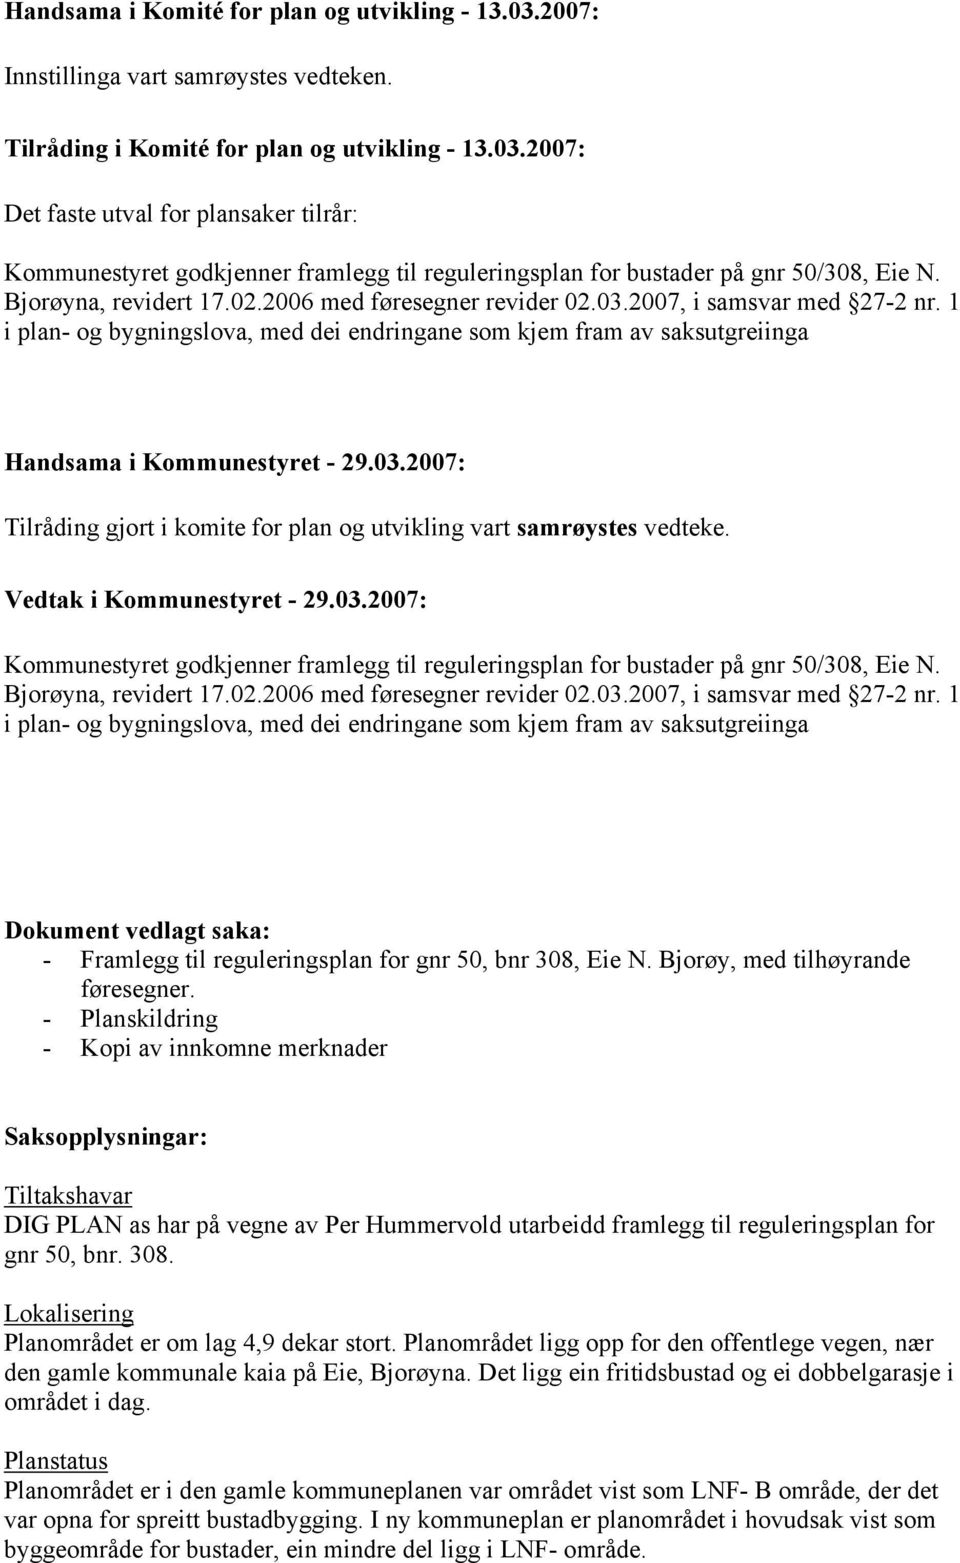 Vedtak i Kommunestyret - 29.03.2007: Kommunestyret godkjenner framlegg til reguleringsplan for bustader på gnr 50/308, Eie N. Bjorøyna, revidert 17.02.2006 med føresegner revider 02.03.2007, i samsvar med 27-2 nr.